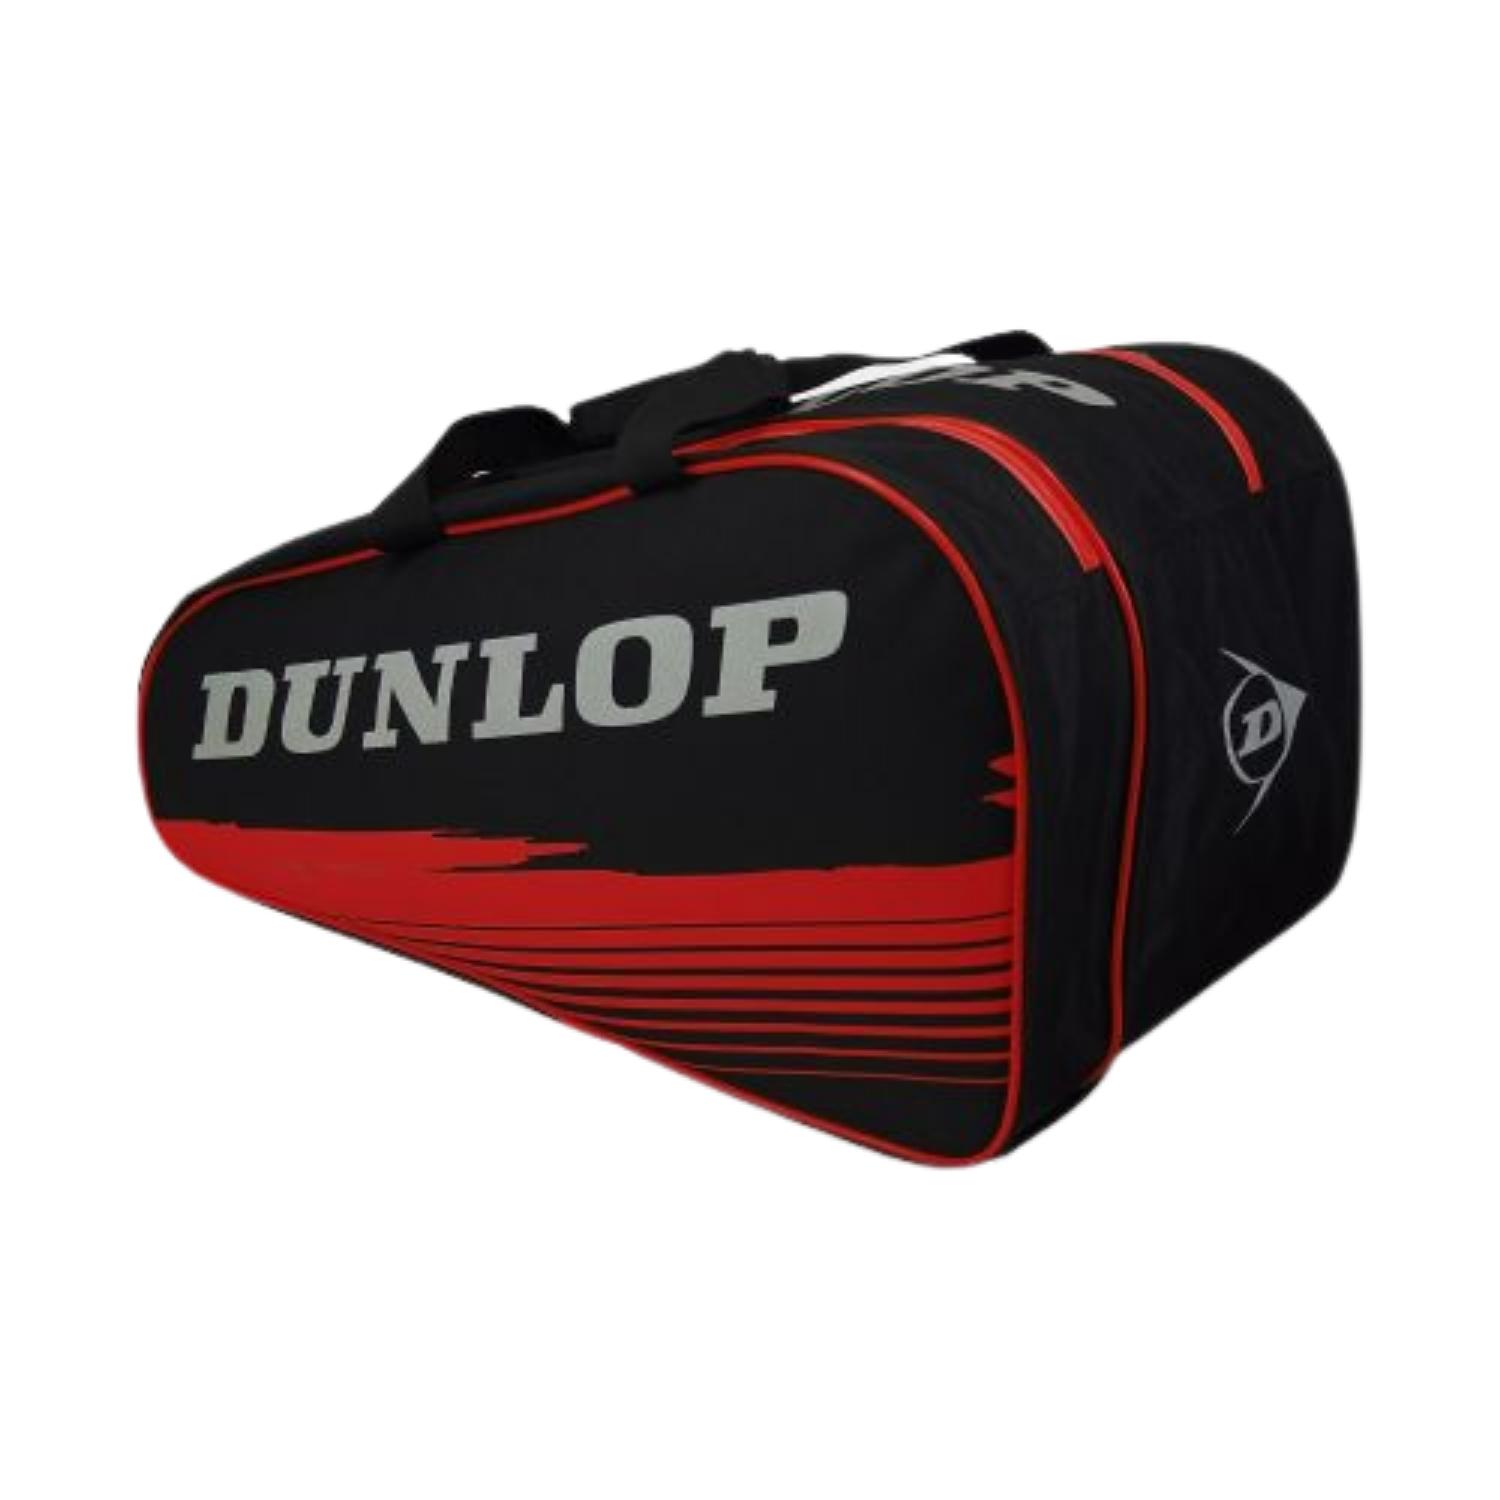 Dunlop | Stor padeltaske » Lav pris